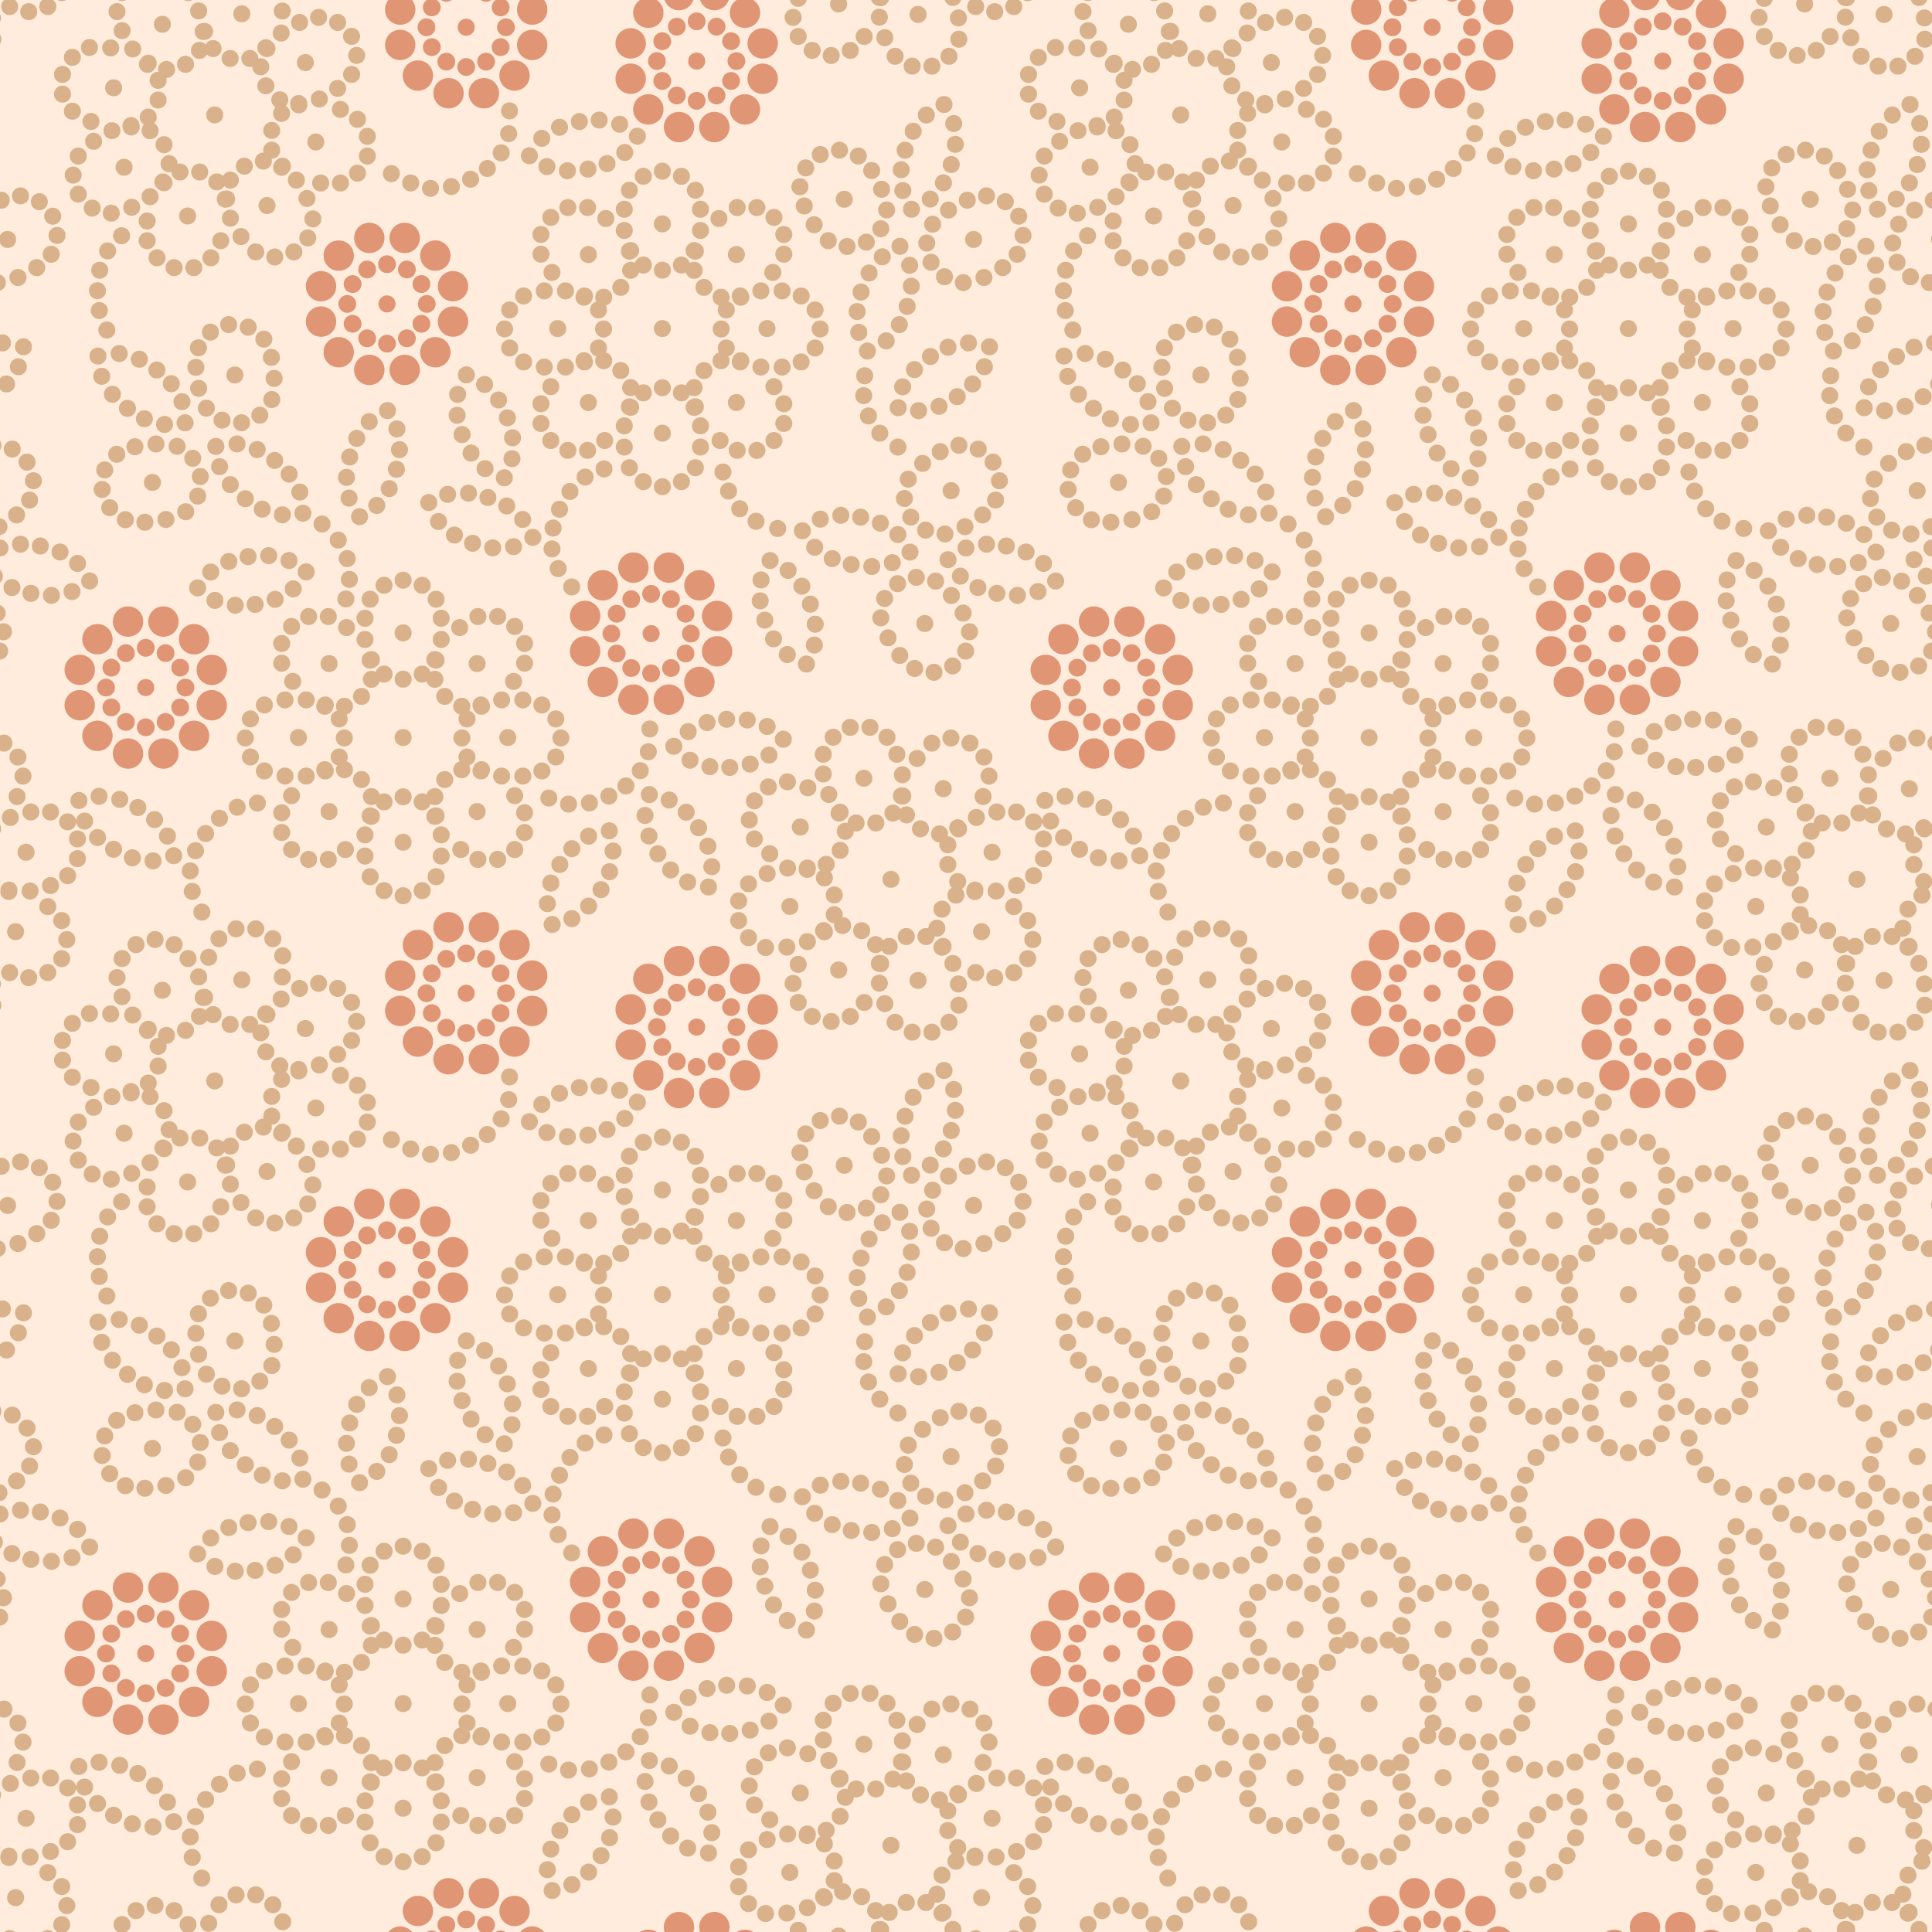 壁紙 背景イラスト 花の模様 柄 パターン No 143 丸の集まり 赤